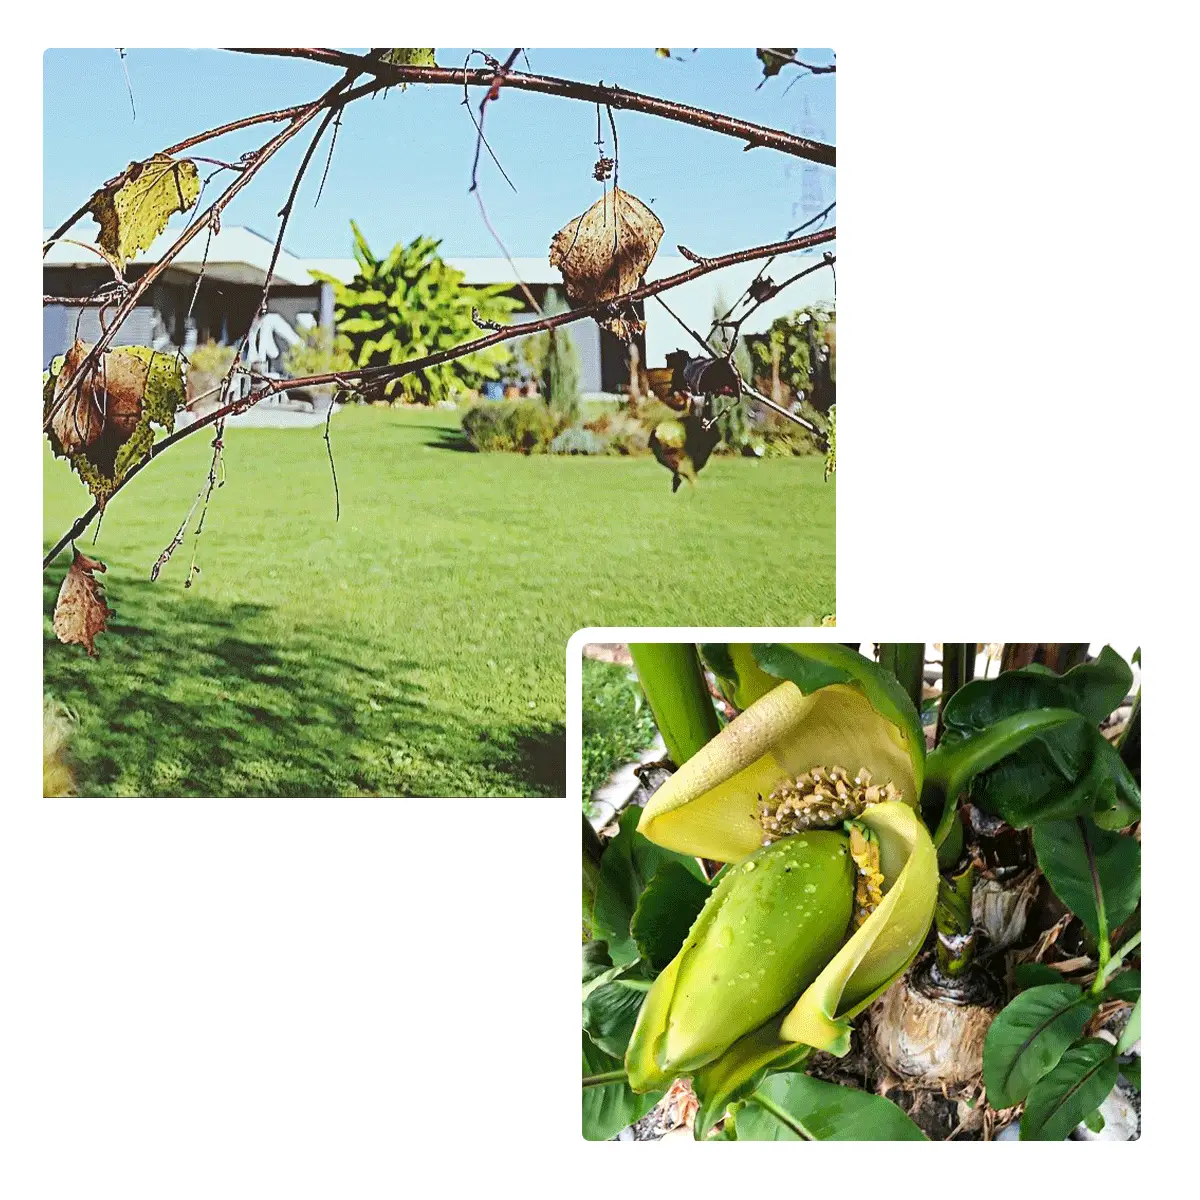 Unsere Banane trägt Früchte.